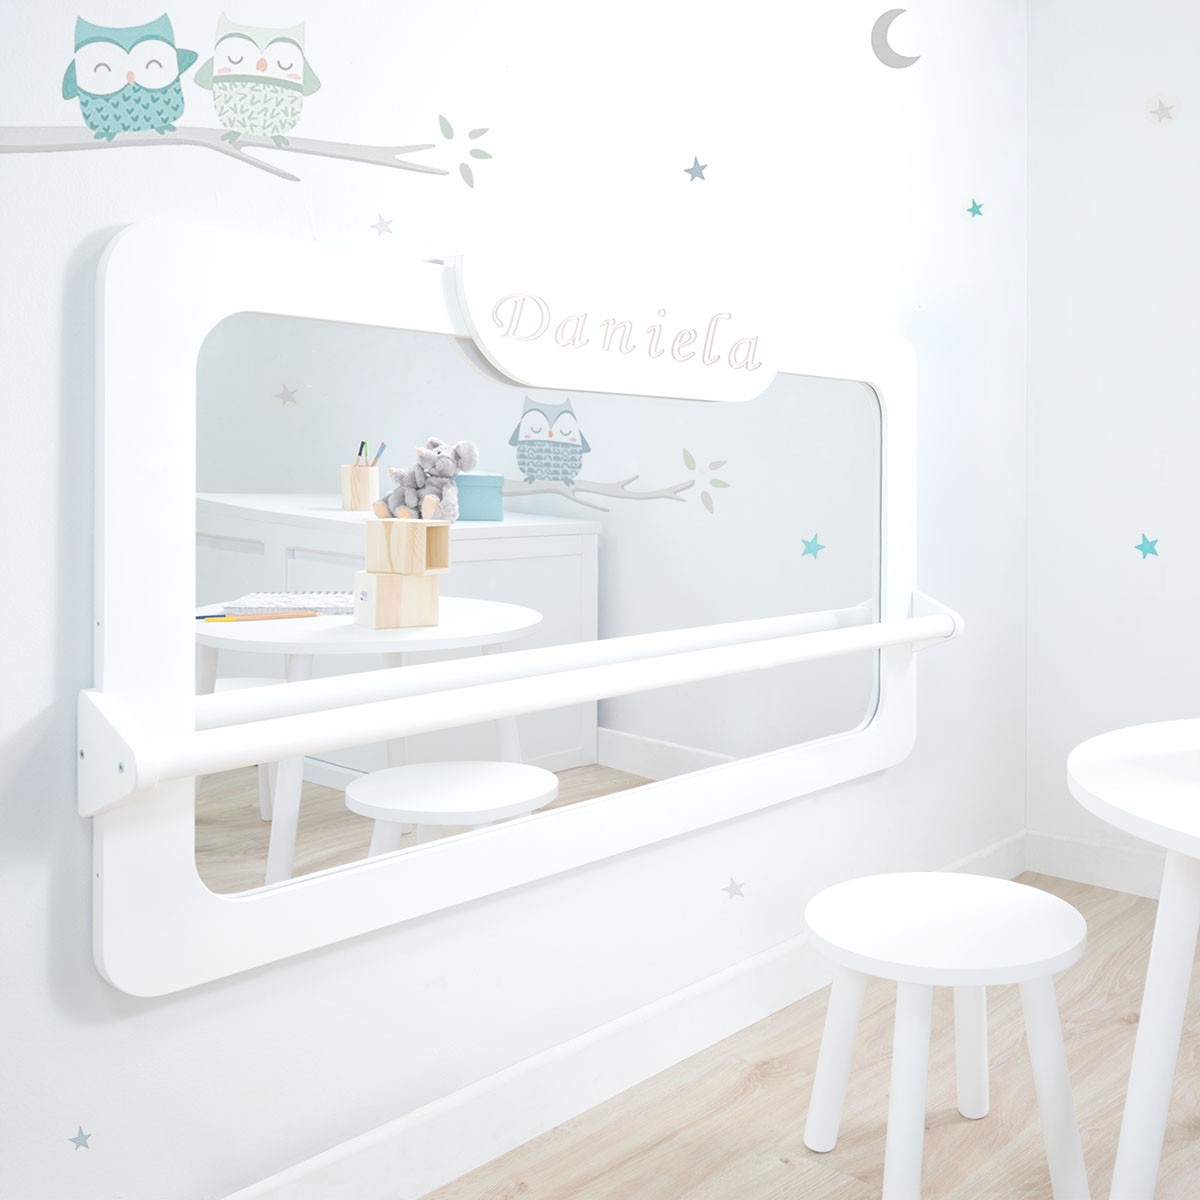 Miroir incassable Montessori avec barre d´appui - Livraison gratuite